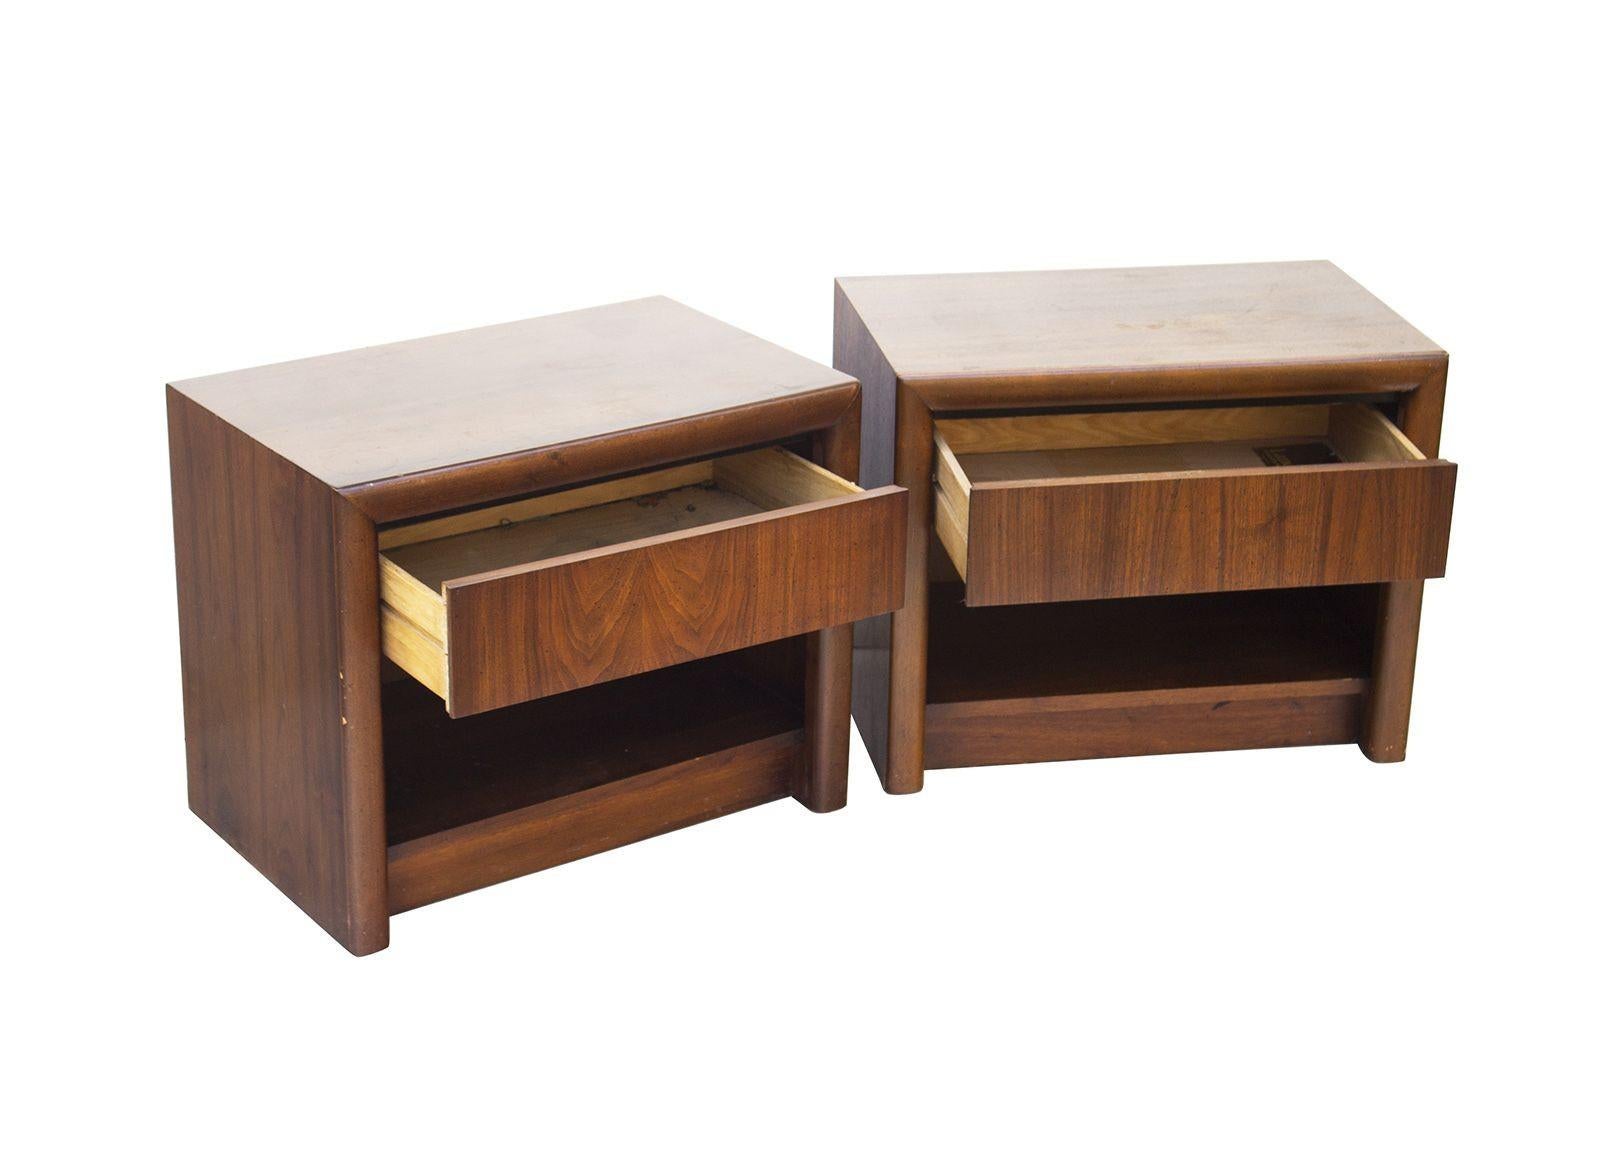 États-Unis, années 1970
Paire de tables de nuit en noyer de style moderne du milieu du siècle, fabriquées par Lane Furniture. Chacune est dotée d'un tiroir unique pour un rangement dissimulé et d'une étagère ouverte en dessous. Des pièces